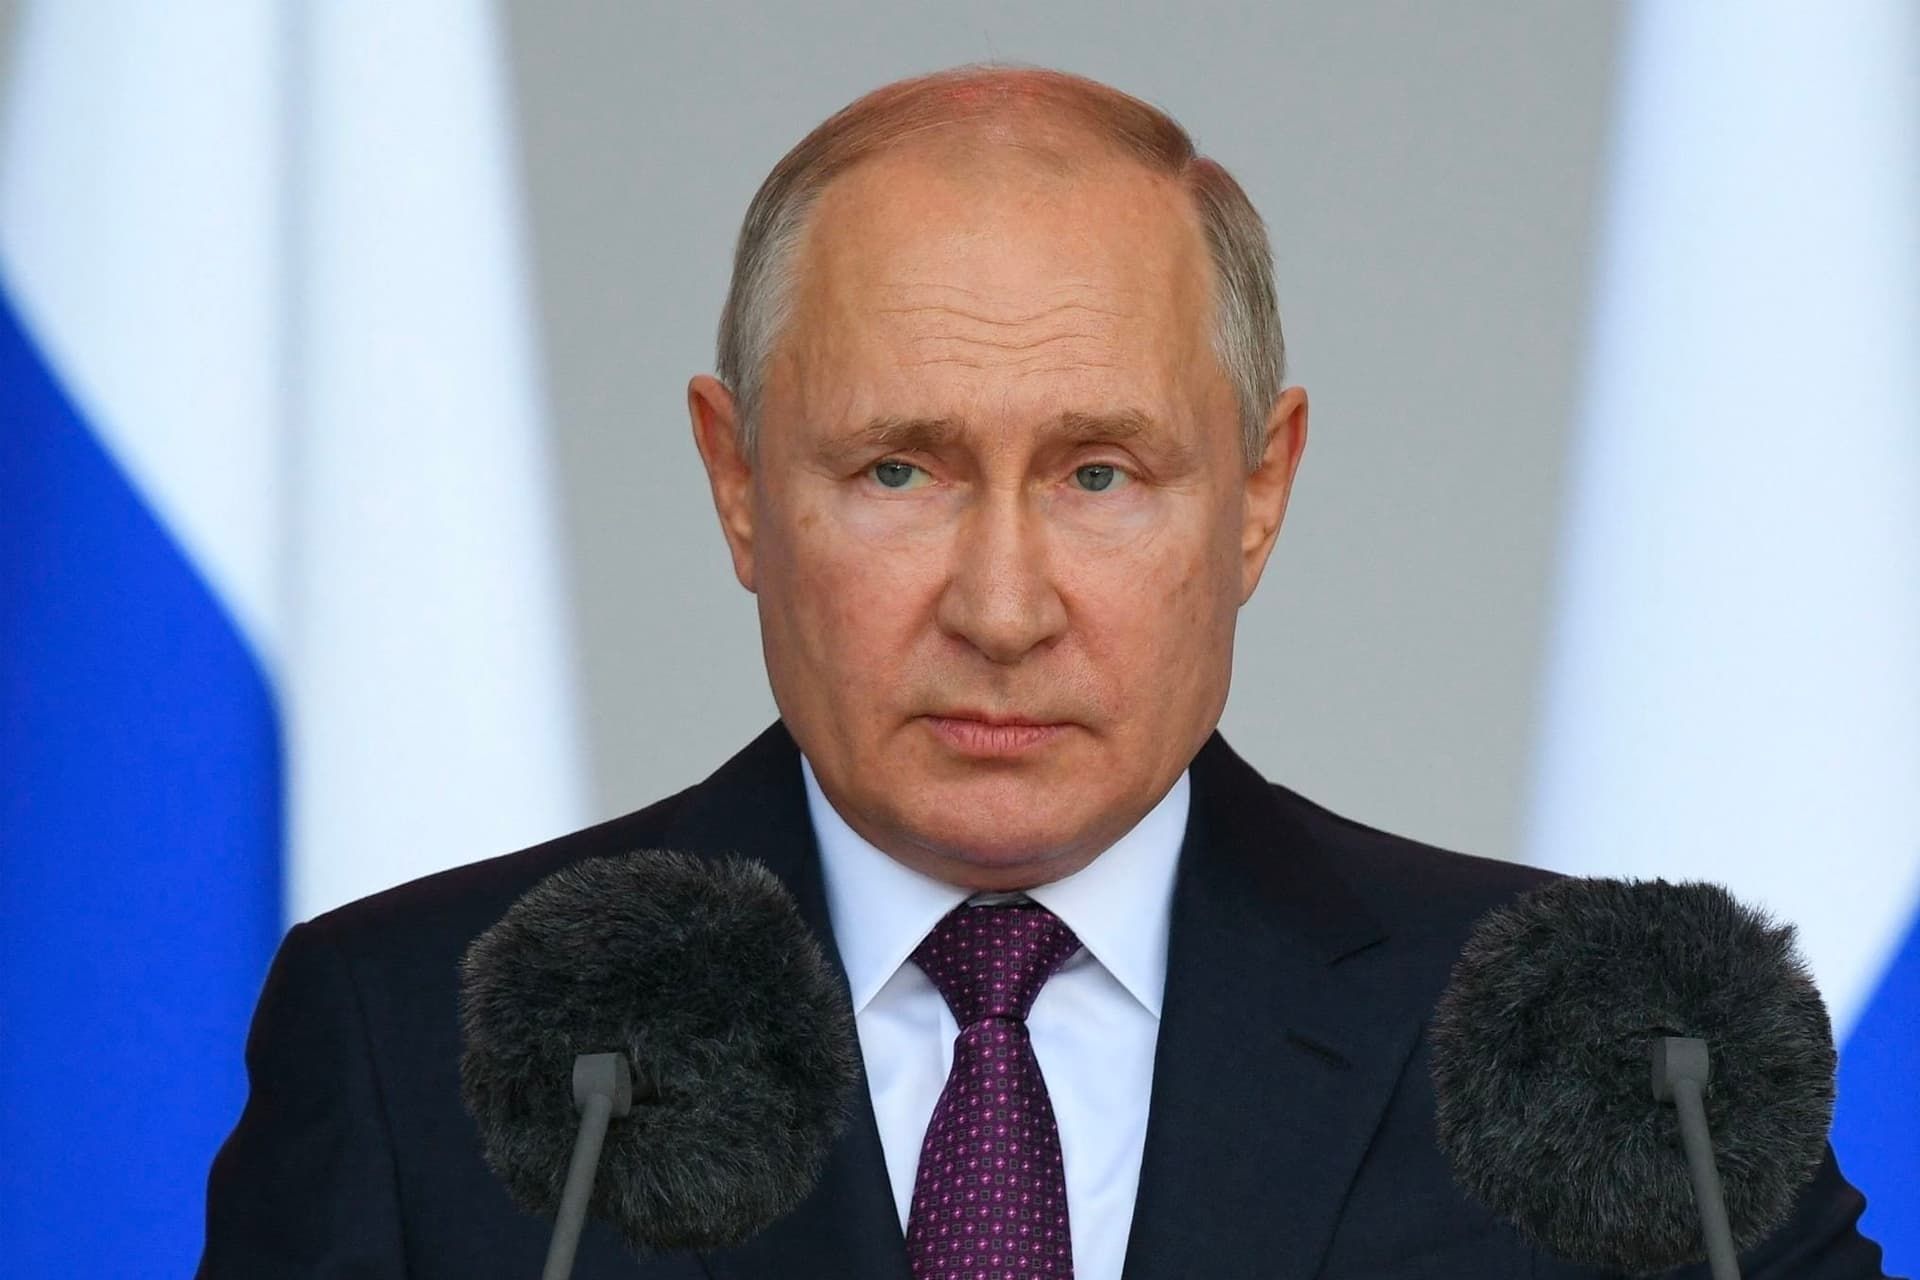 ولادیمیر پوتین / Vladimir Putin رئیس جمهور روسیه با کت شلوار